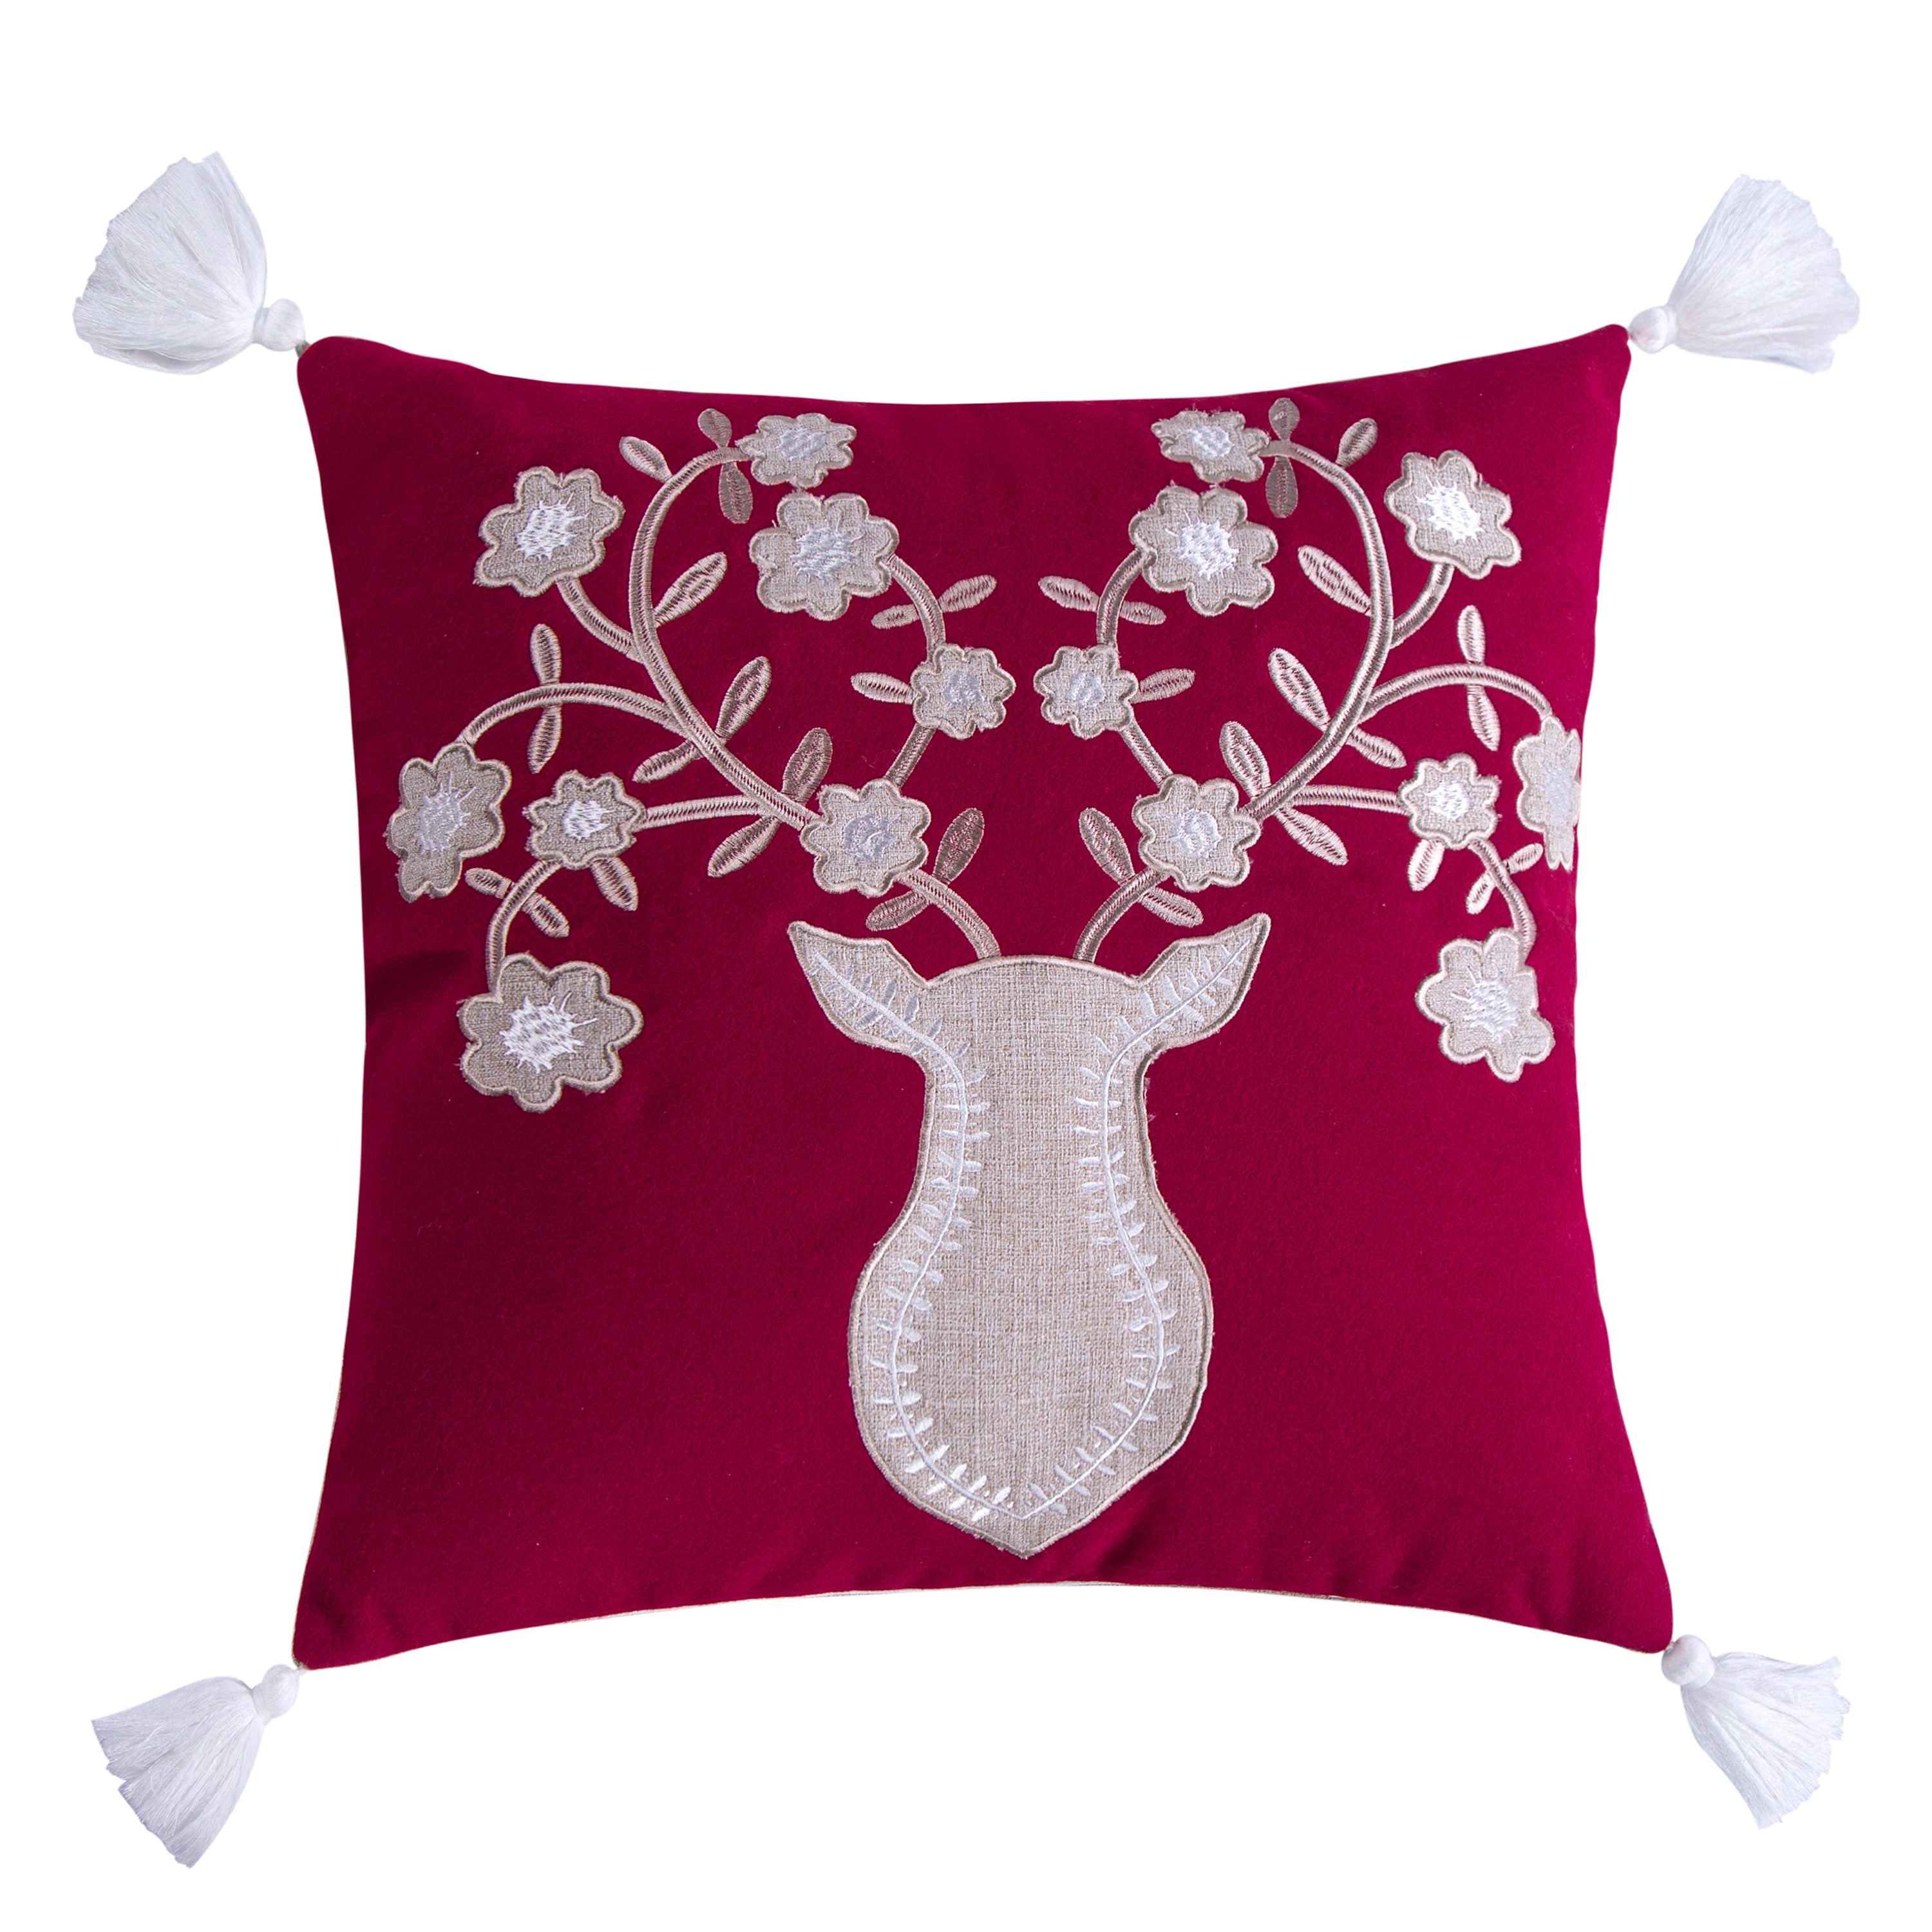 Sleigh Bells Grey Deer Textured Red Tassel Pillow